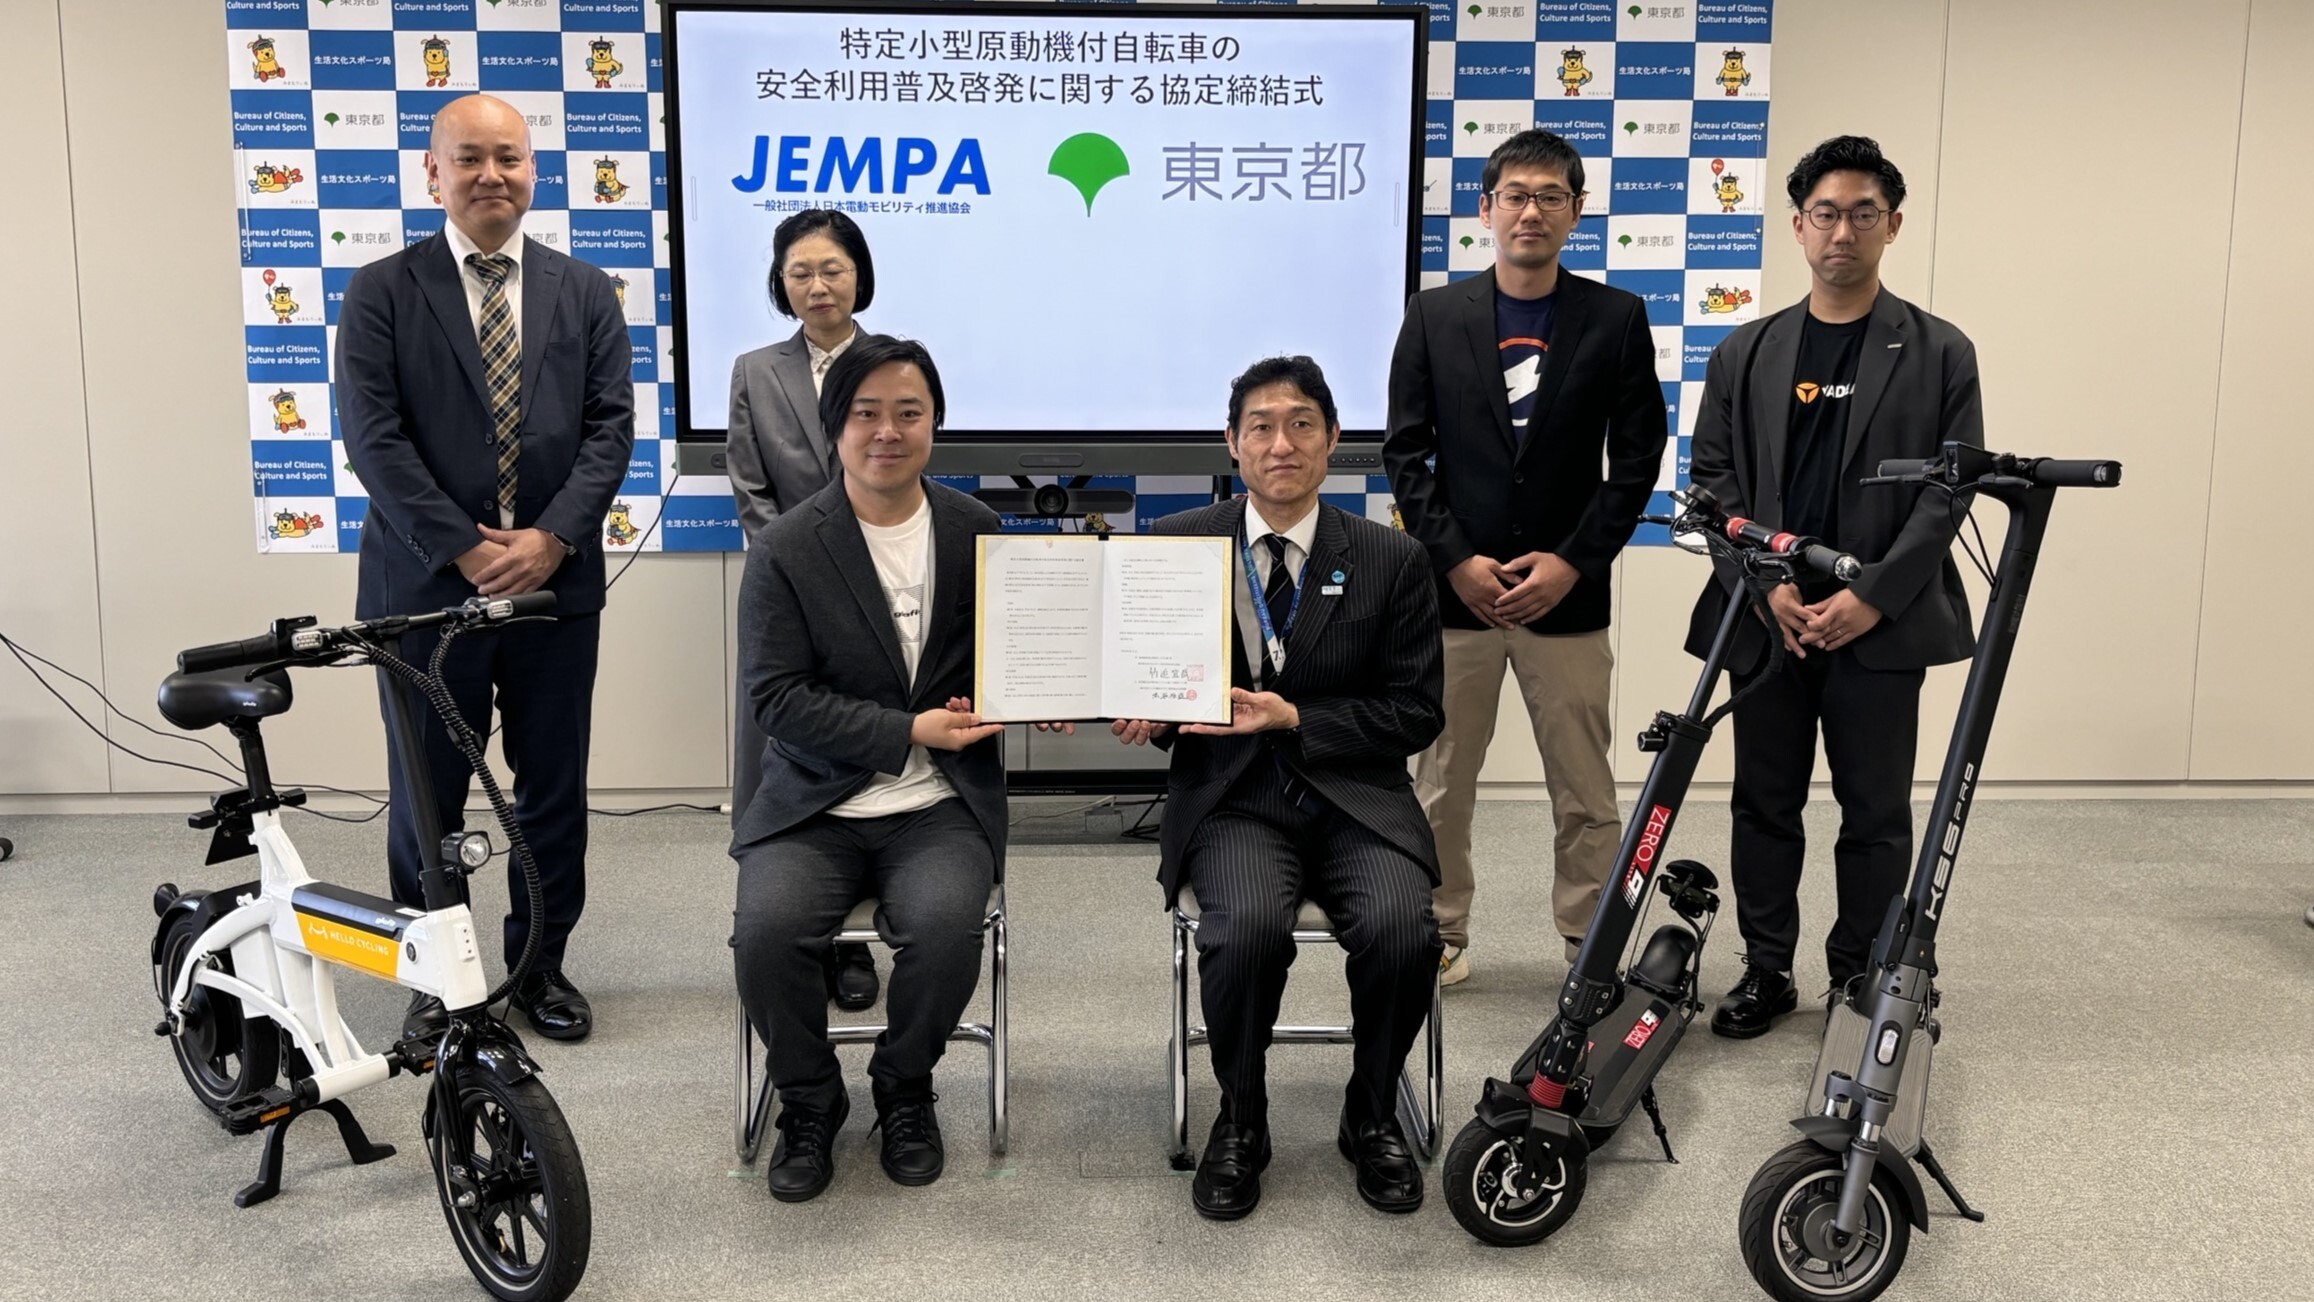 特定小型原動機付自転車の安全利用と普及啓発にむけて
東京都と一般社団法人日本電動モビリティ推進協会が連携 – Net24